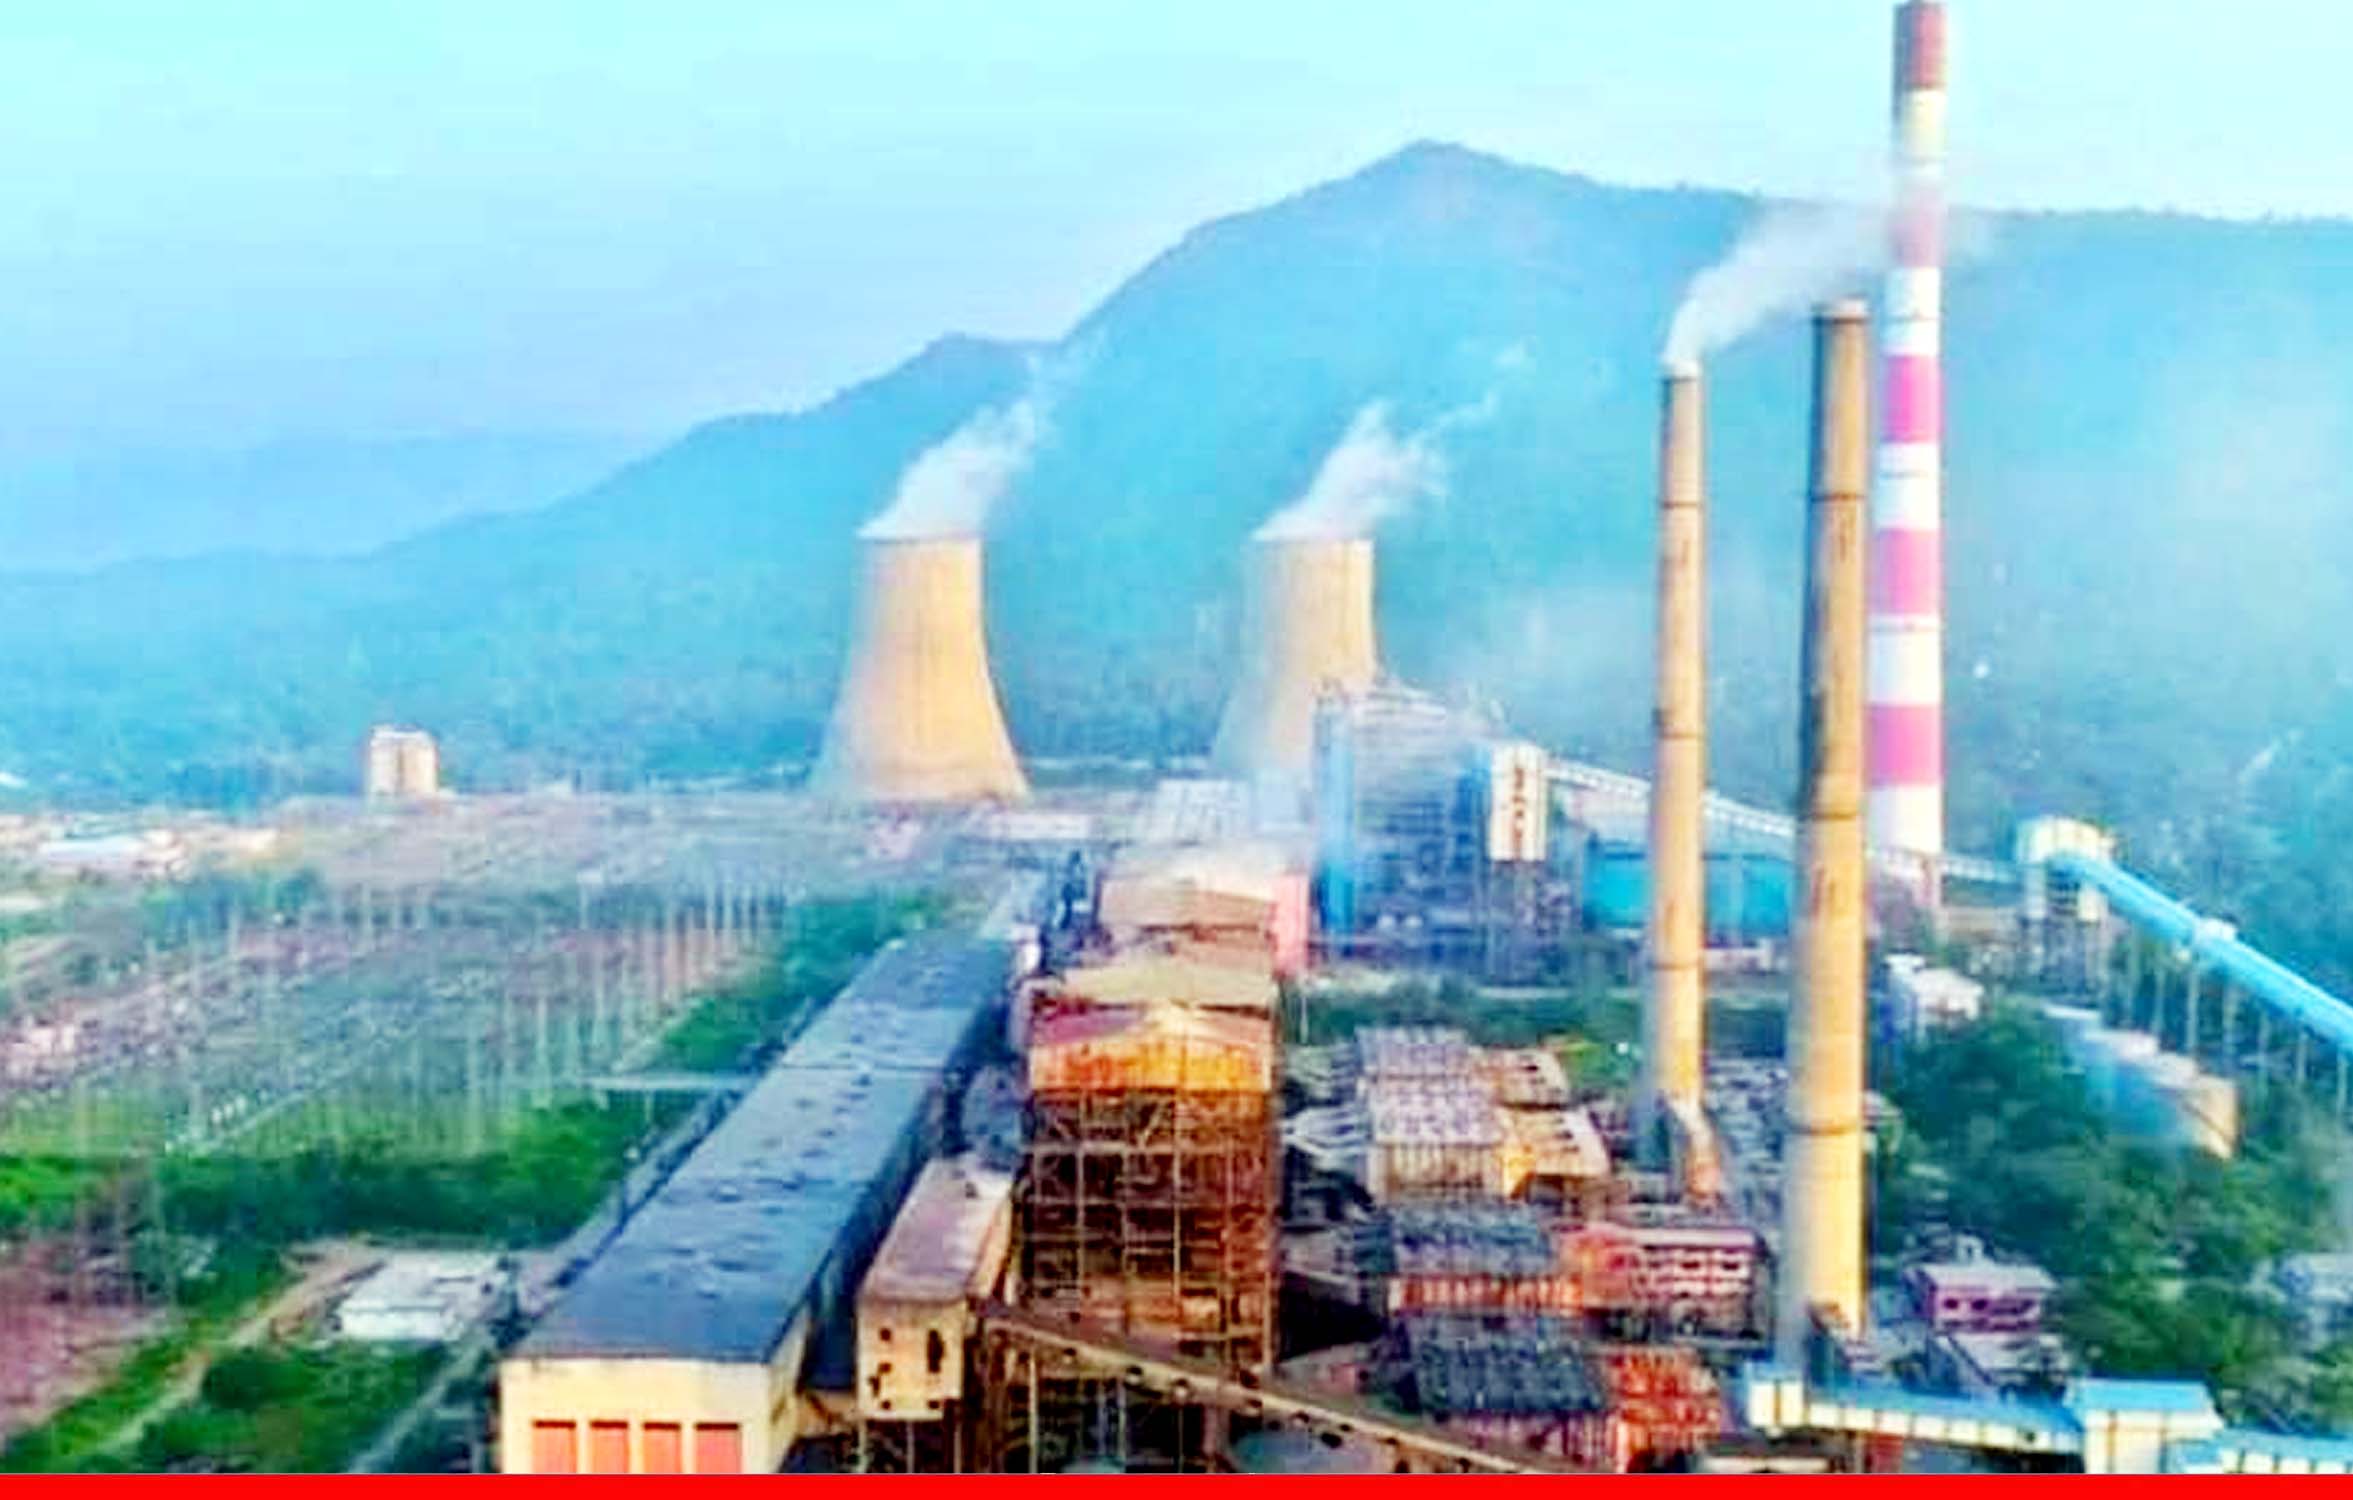 72 पावर प्‍लांट में बचा सिर्फ 3 दिन का कोयला, भारत में छा सकता है चीन जैसा बिजली संकट